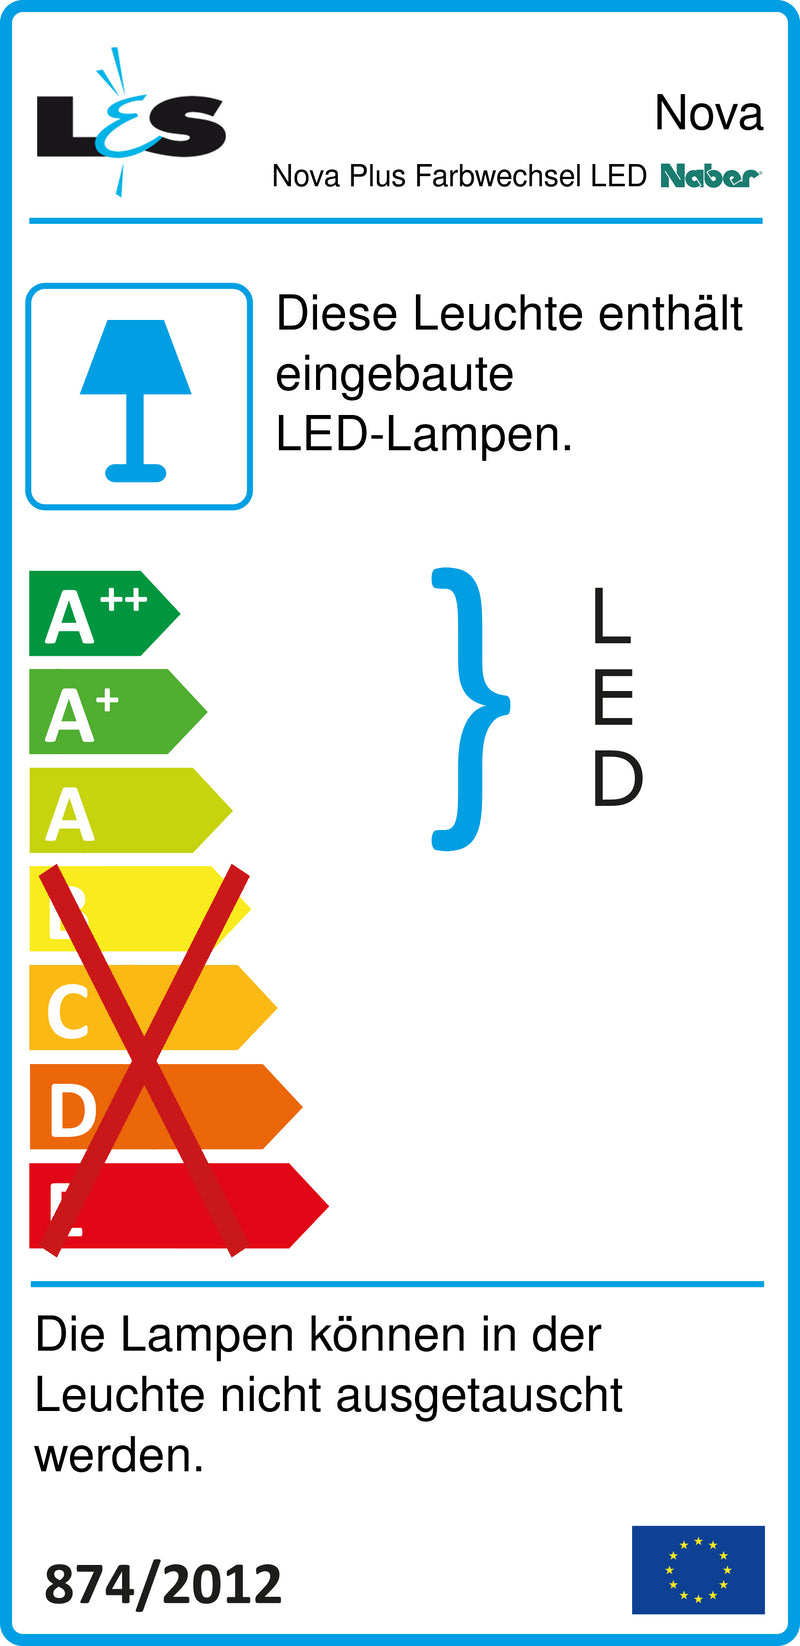 E-Label zu Zeichnung zu Nova Plus Farbwechsel LED als Variante Set-3, edelstahlfarbig von Naber GmbH in der Kategorie Lichttechnik in Österreich auf conceptshop.at